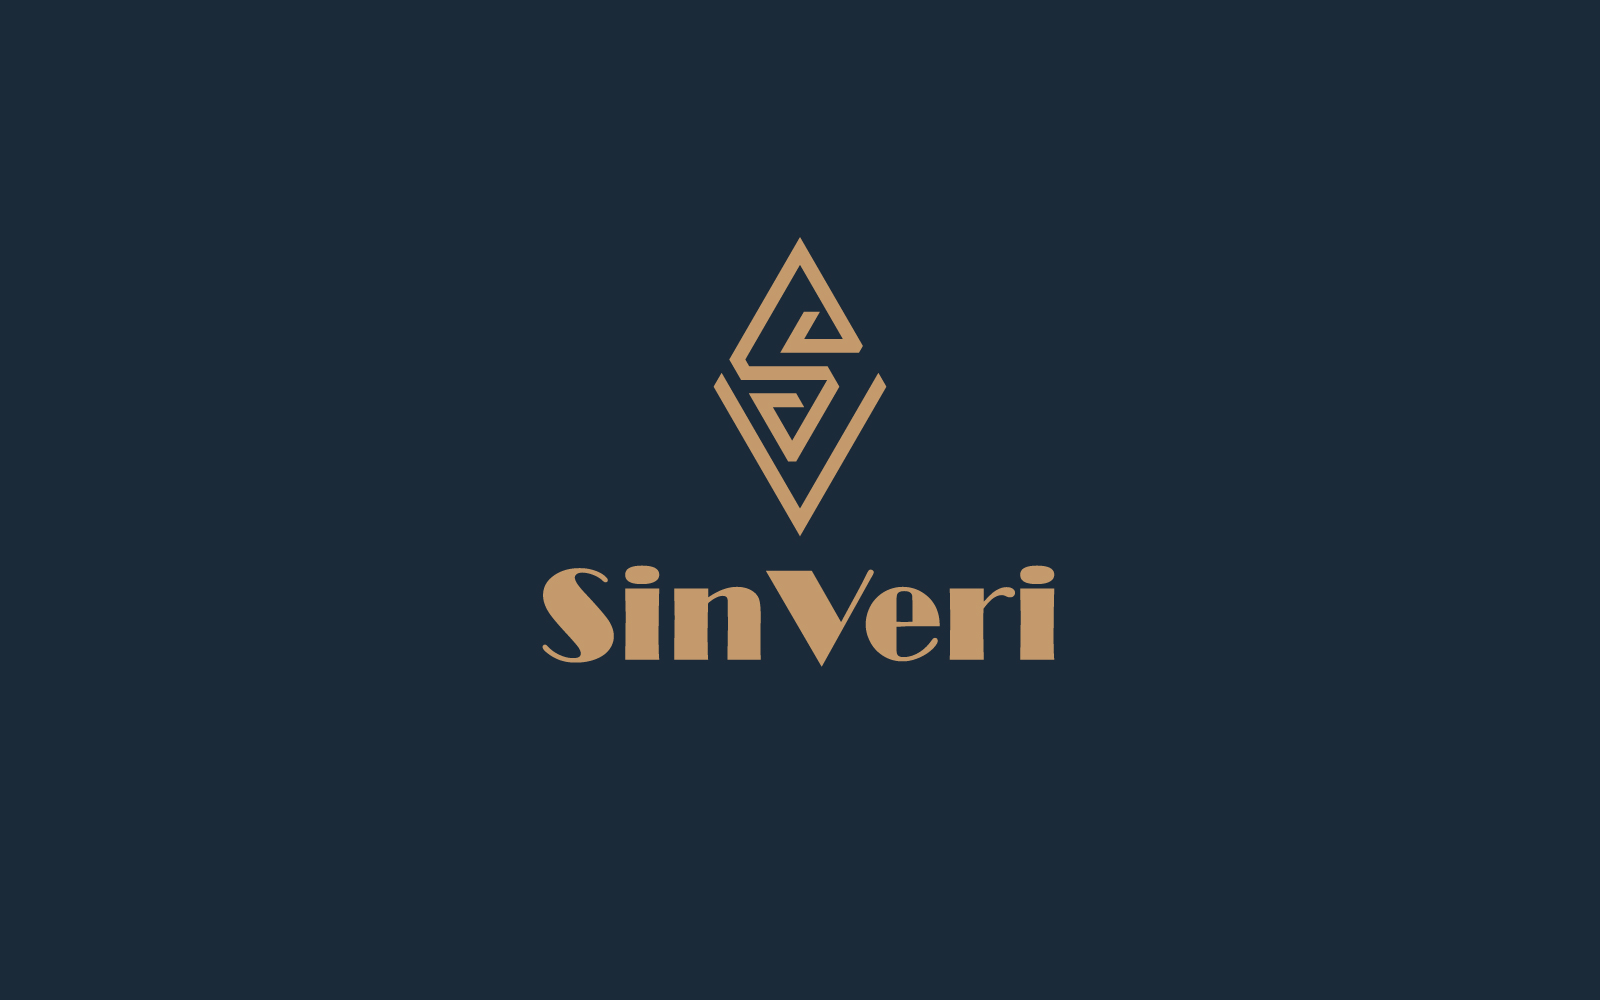 S+V Logo design template golden color